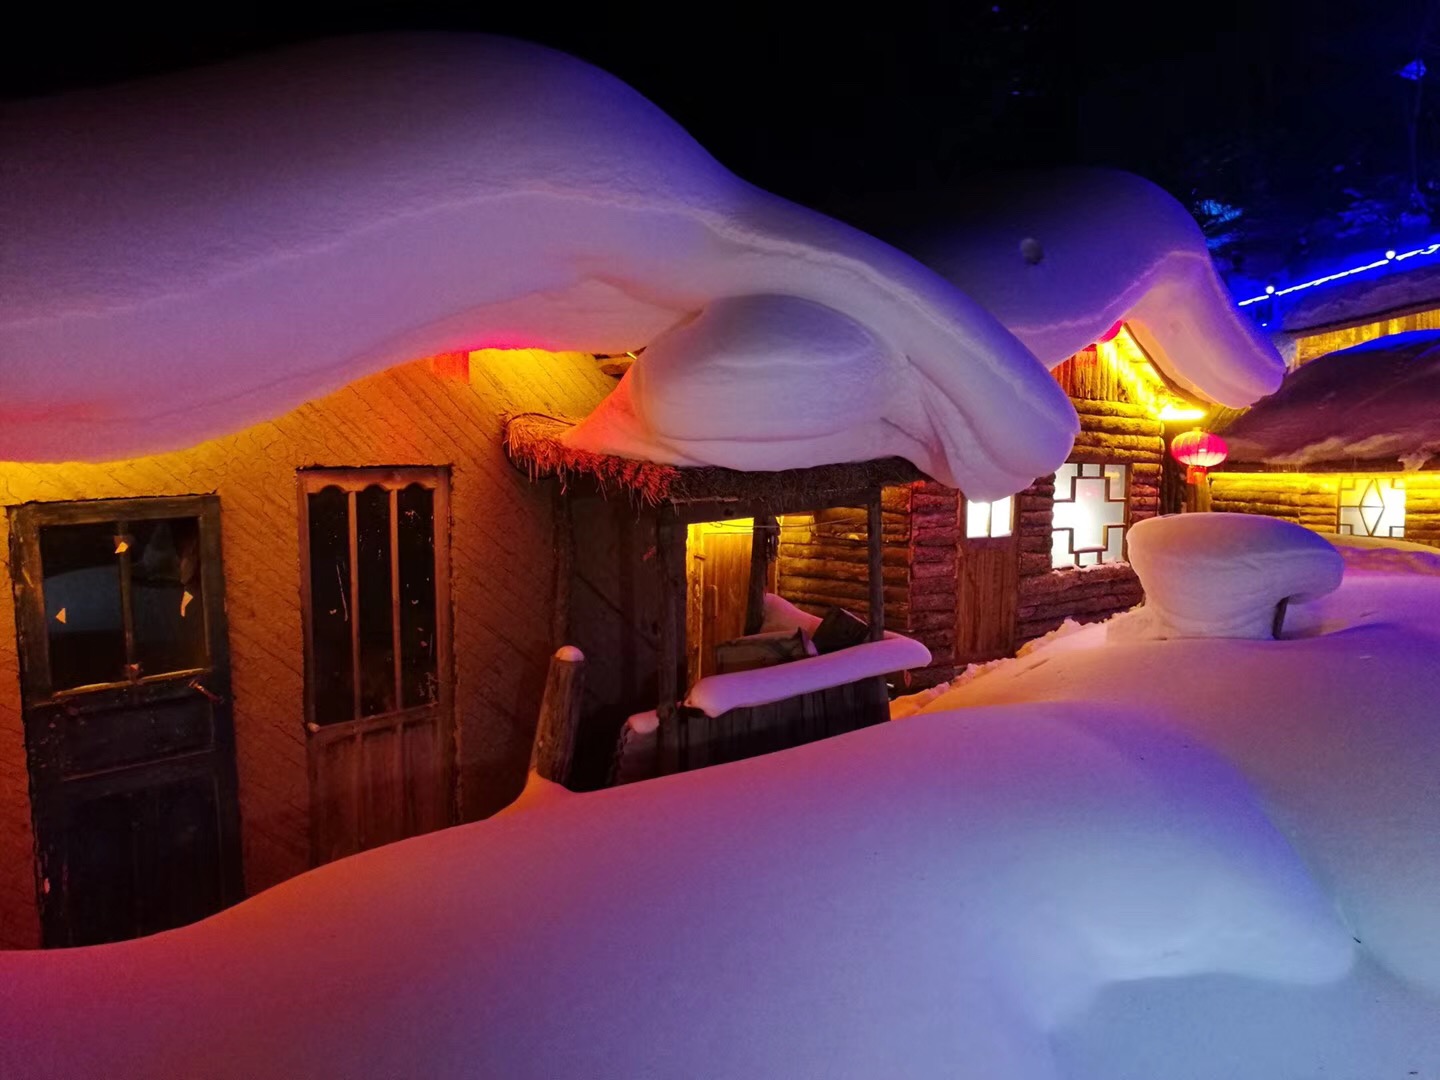 白天的雪花落在屋顶上,积累的厚厚的一层,十分的漂亮,但是夜晚的雪村